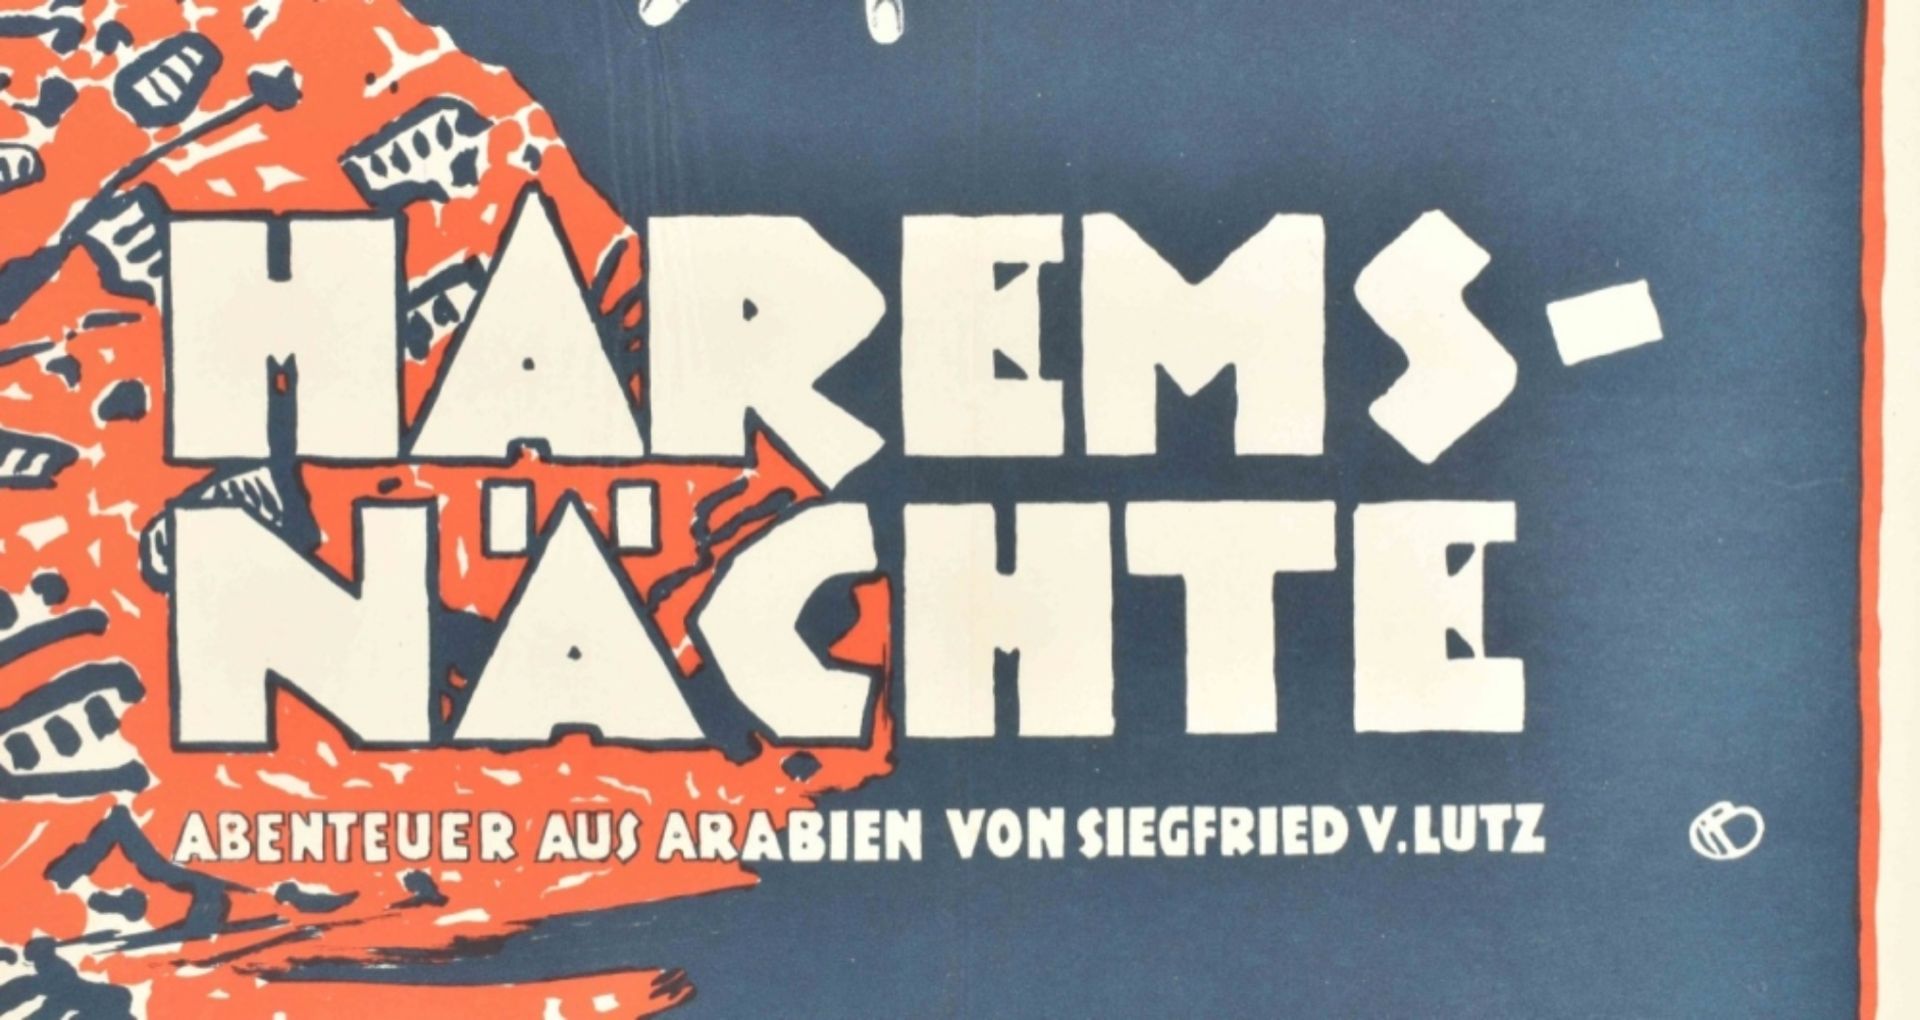 [Entertainment] Harems-Nächte Abenteuer aus Arabien von Siegfried v. Lutz. Friedländer, Hamburg 1921 - Image 4 of 4